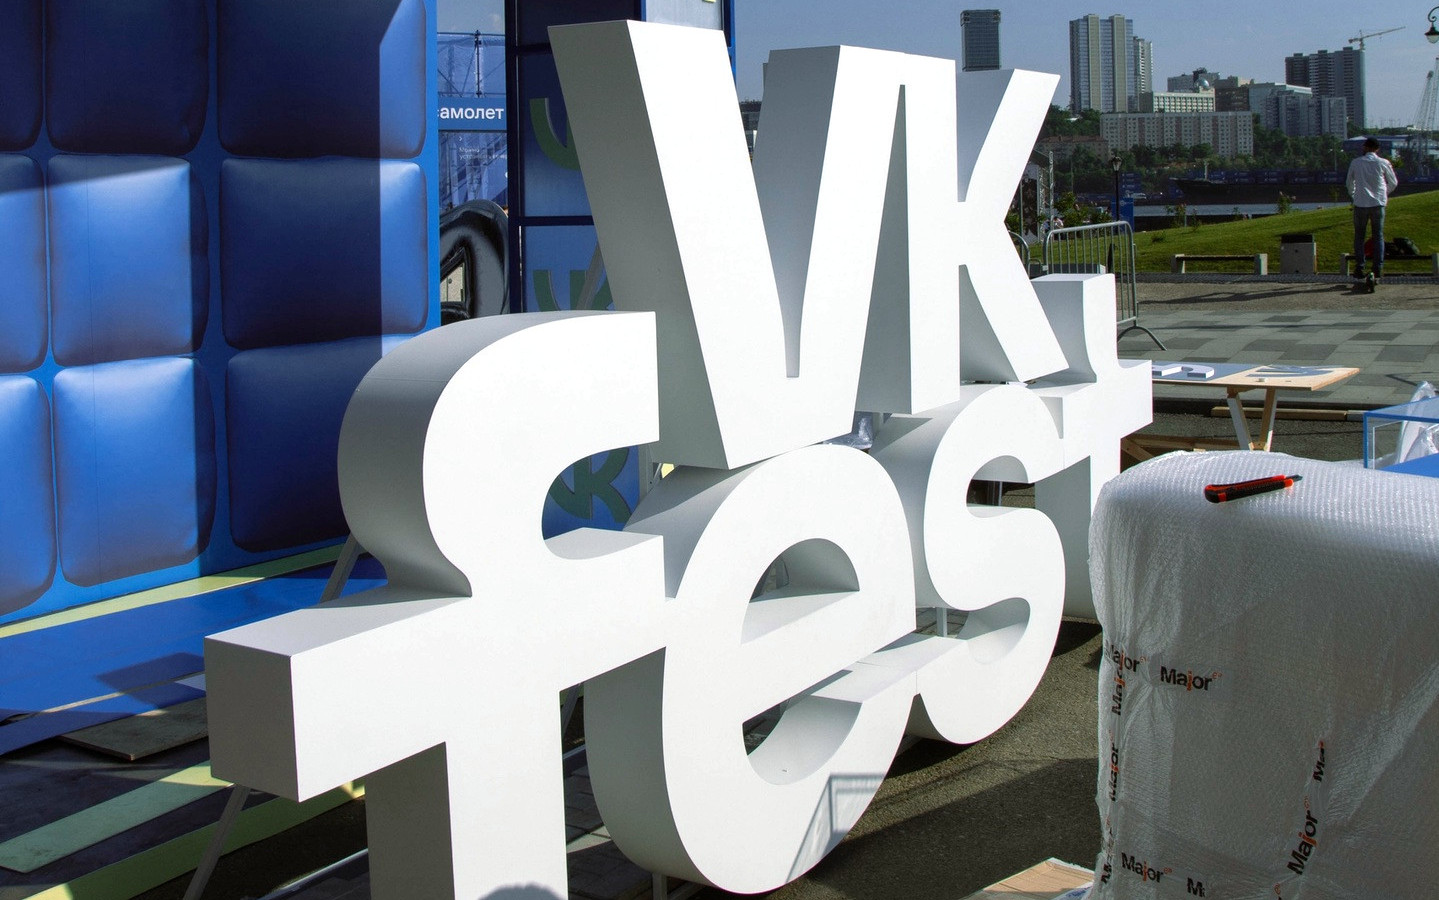 VK Fest